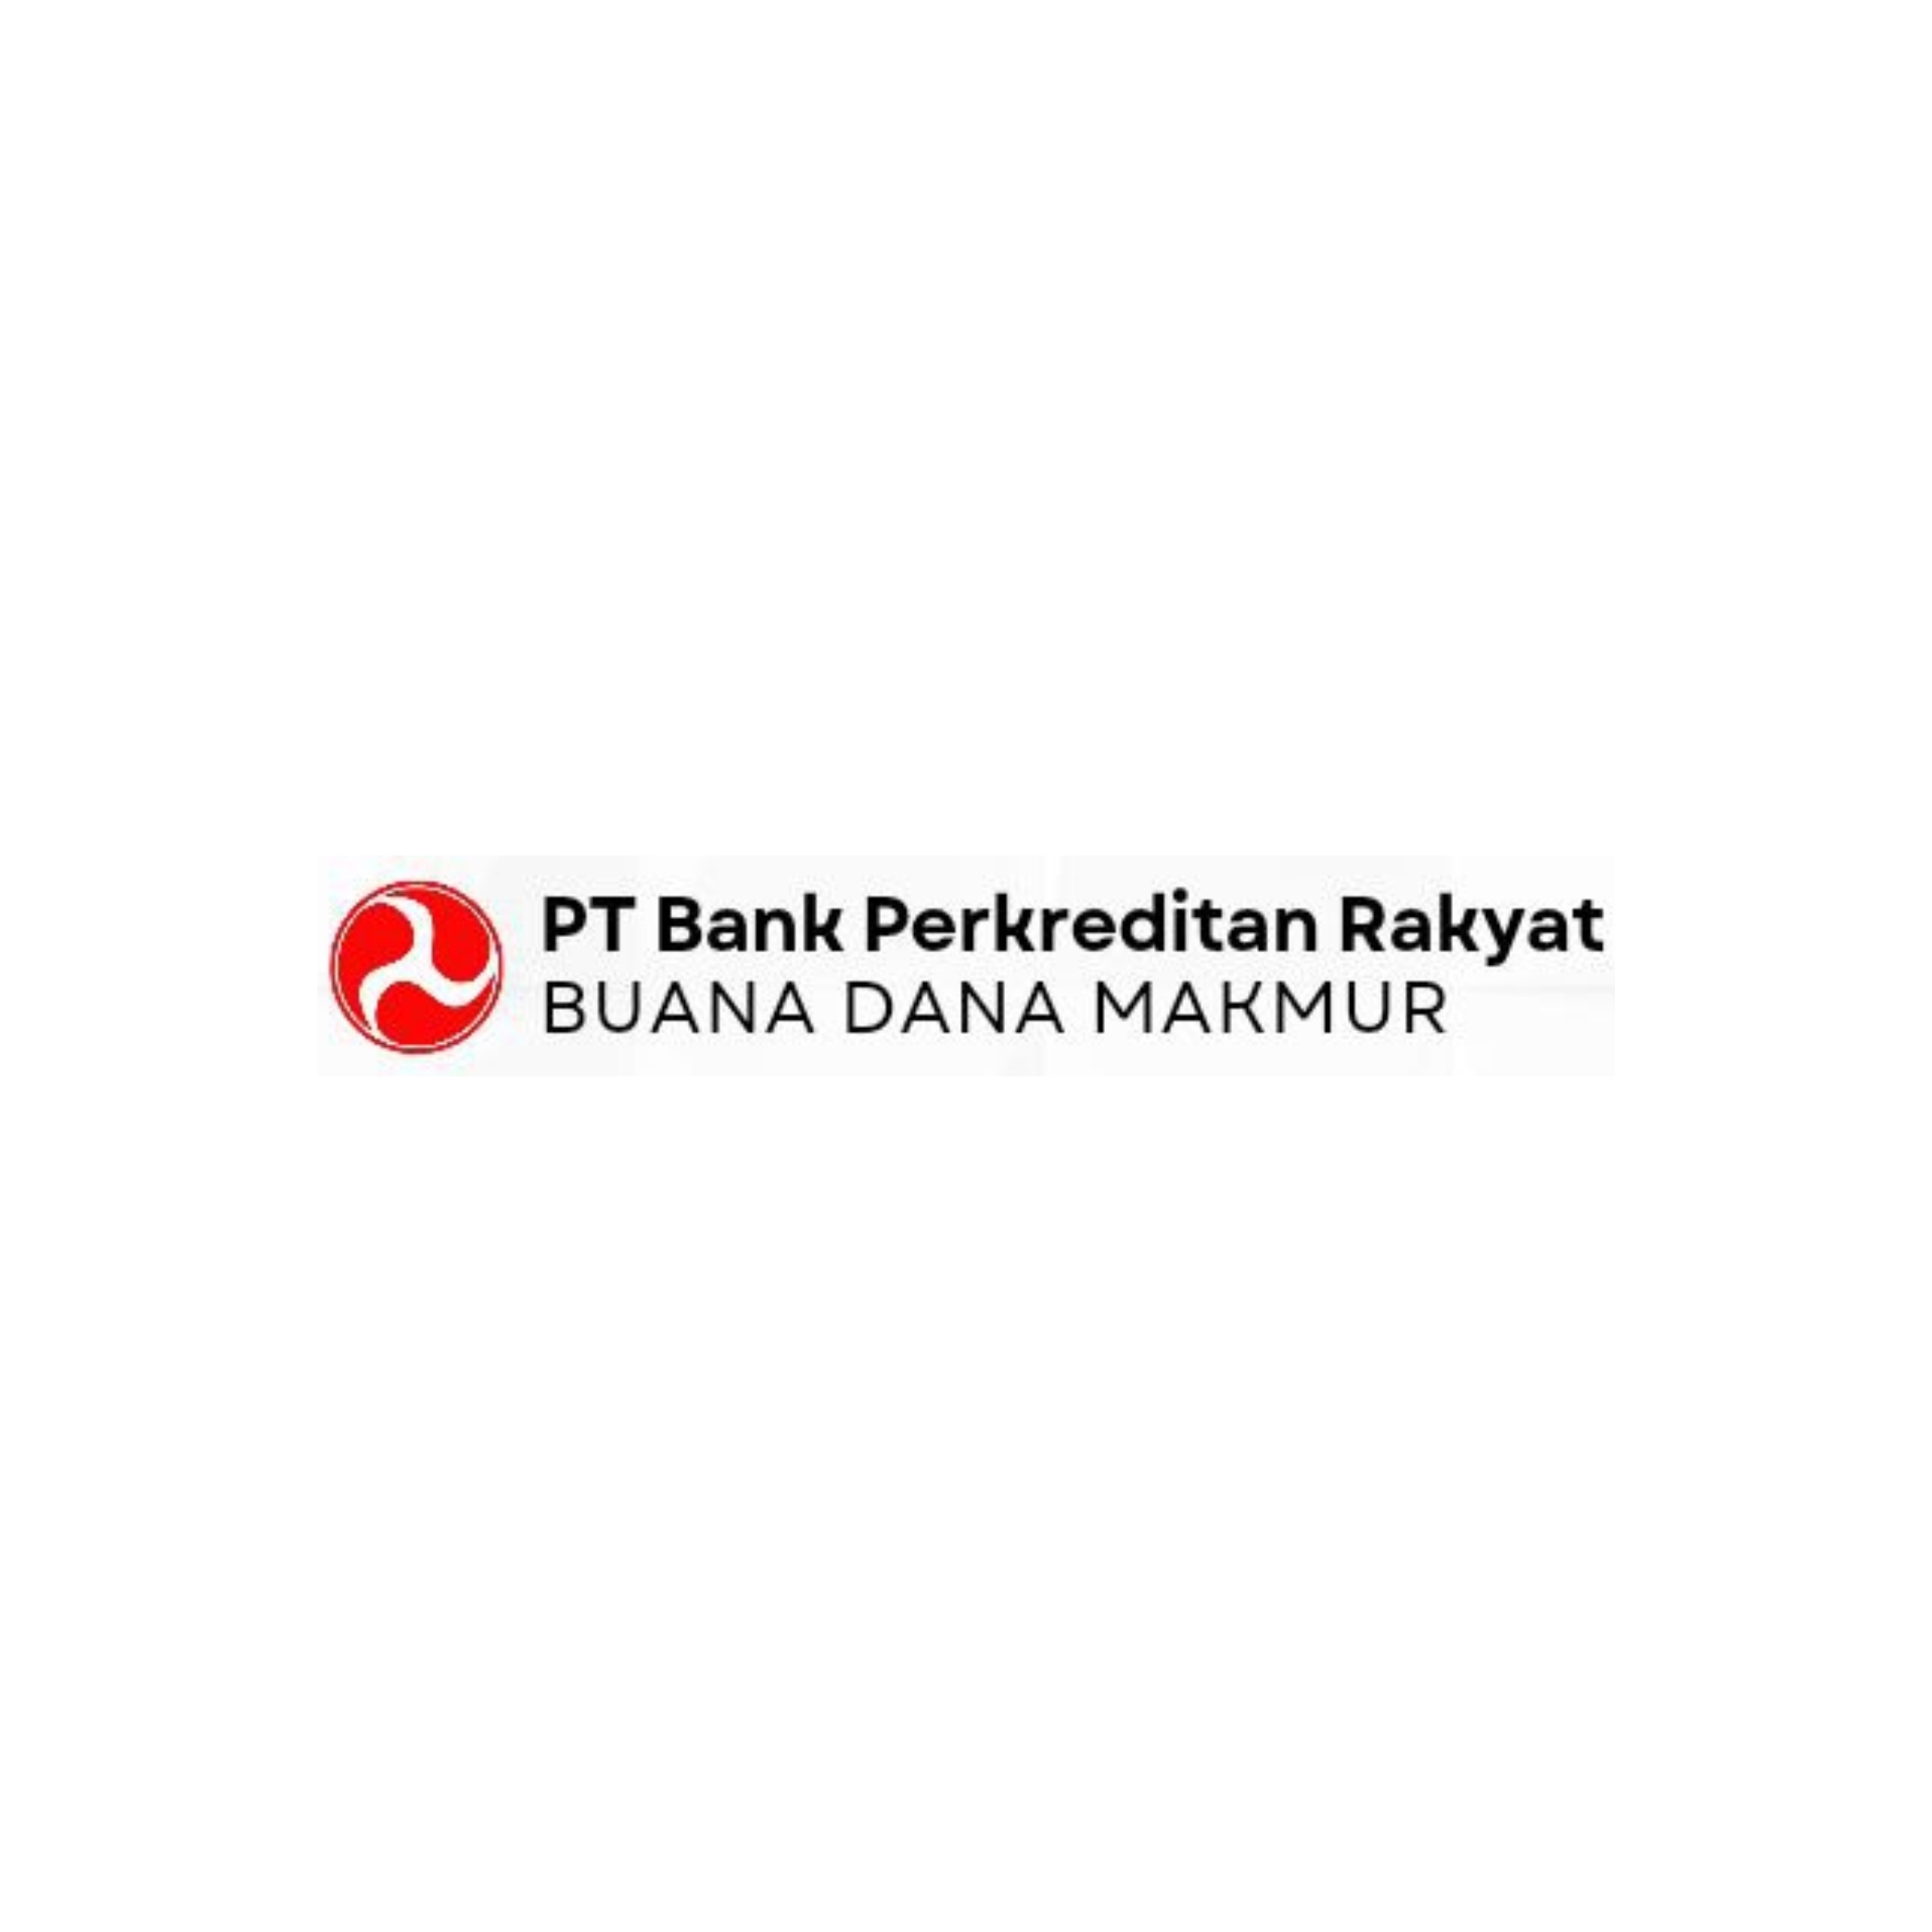 PT. Bank Perkreditan Rakyat